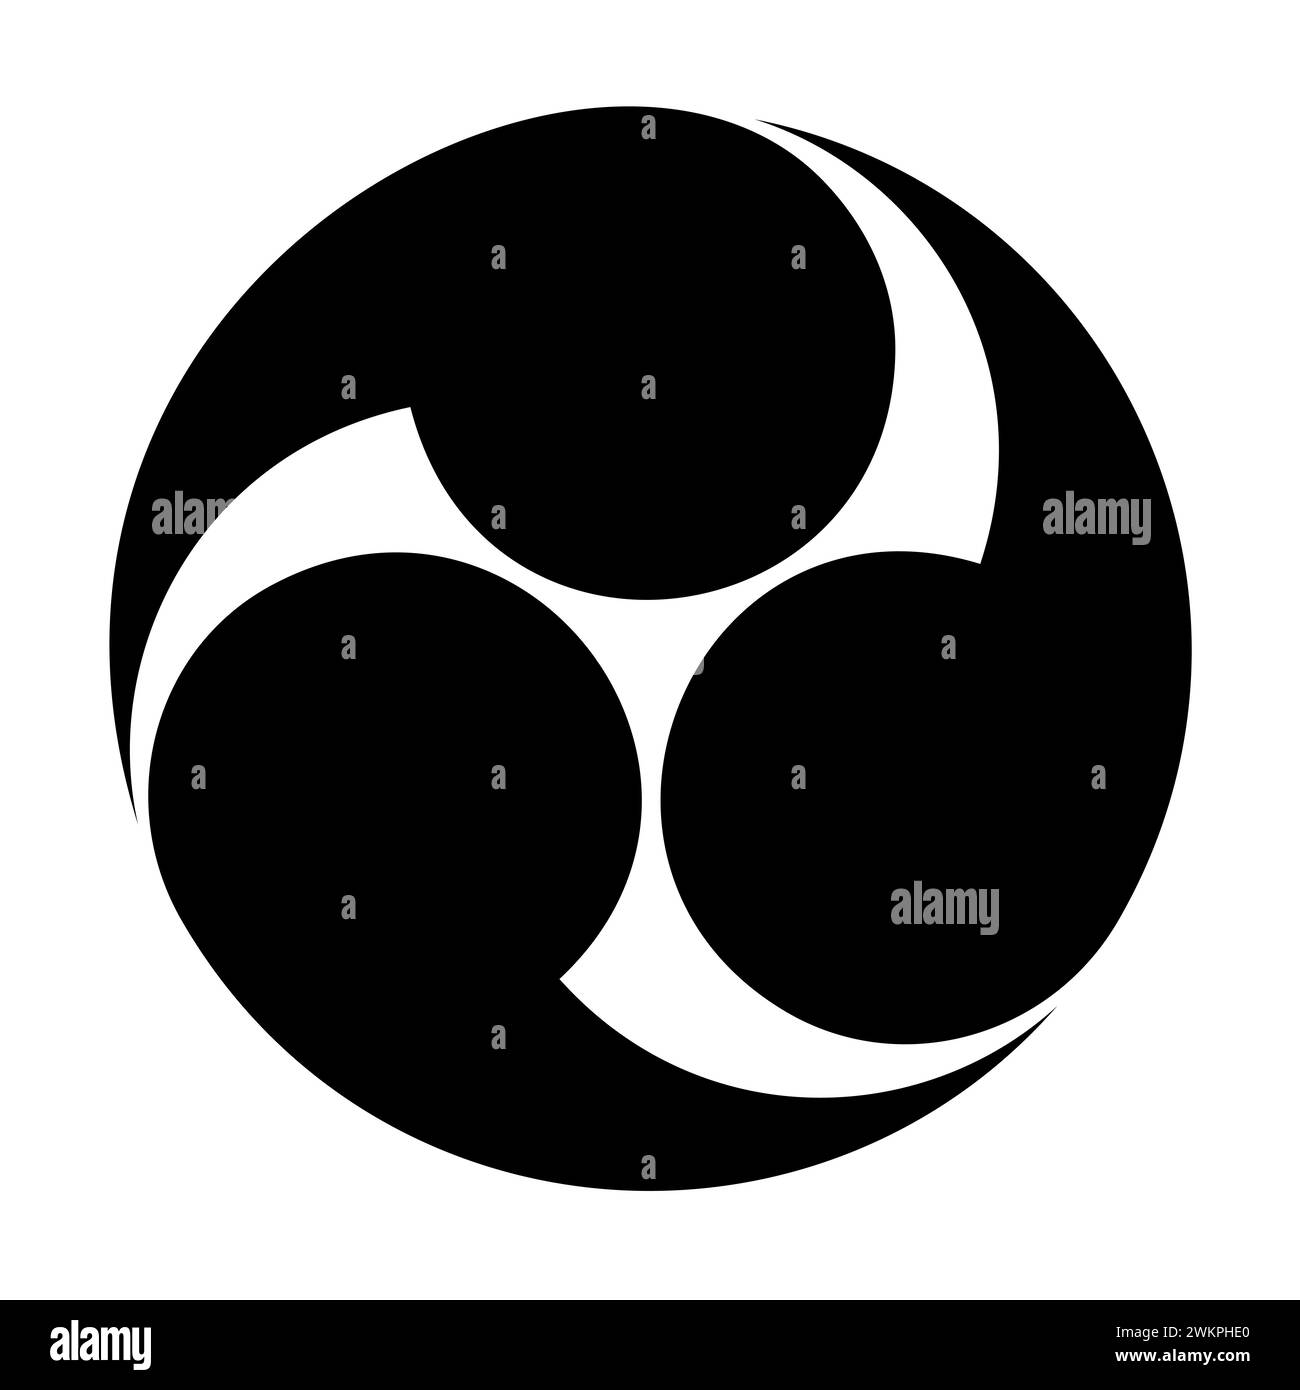 Japanisches tomoe-Symbol, das linke dreifache Mitsudomoe. Ein Wirbel aus drei Kommas oder Kaulquetschen, umschriebener Kreis. Weit verbreitet für oder Embleme usw. Stockfoto